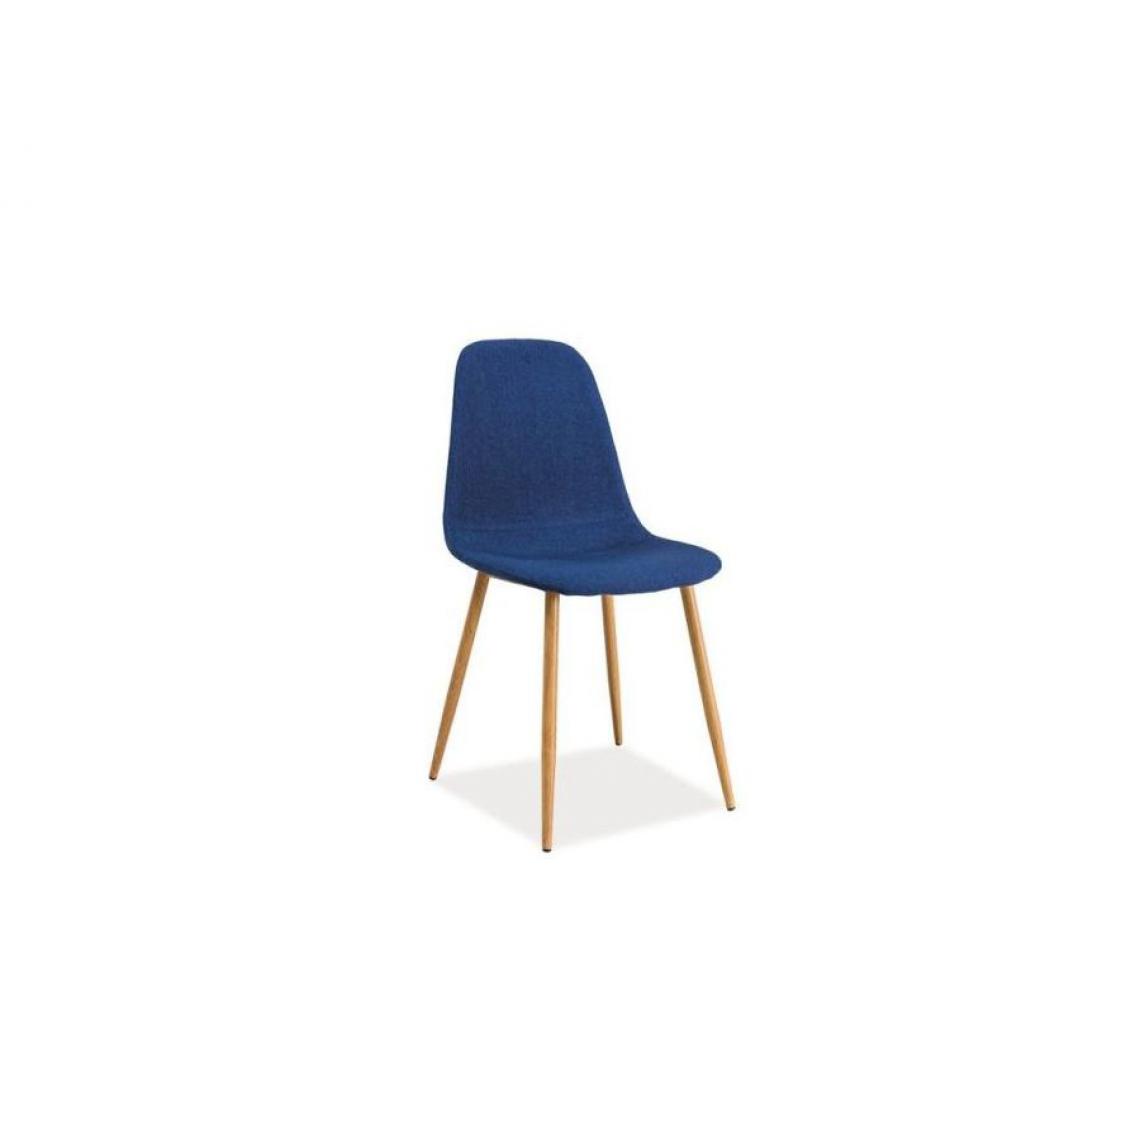 Hucoco - FRANZI | Chaise de style scandinave base en métal | Salle à mager Salon Bureau | 86x44x39 cm | Tissu haute qualité - Bleu - Chaises